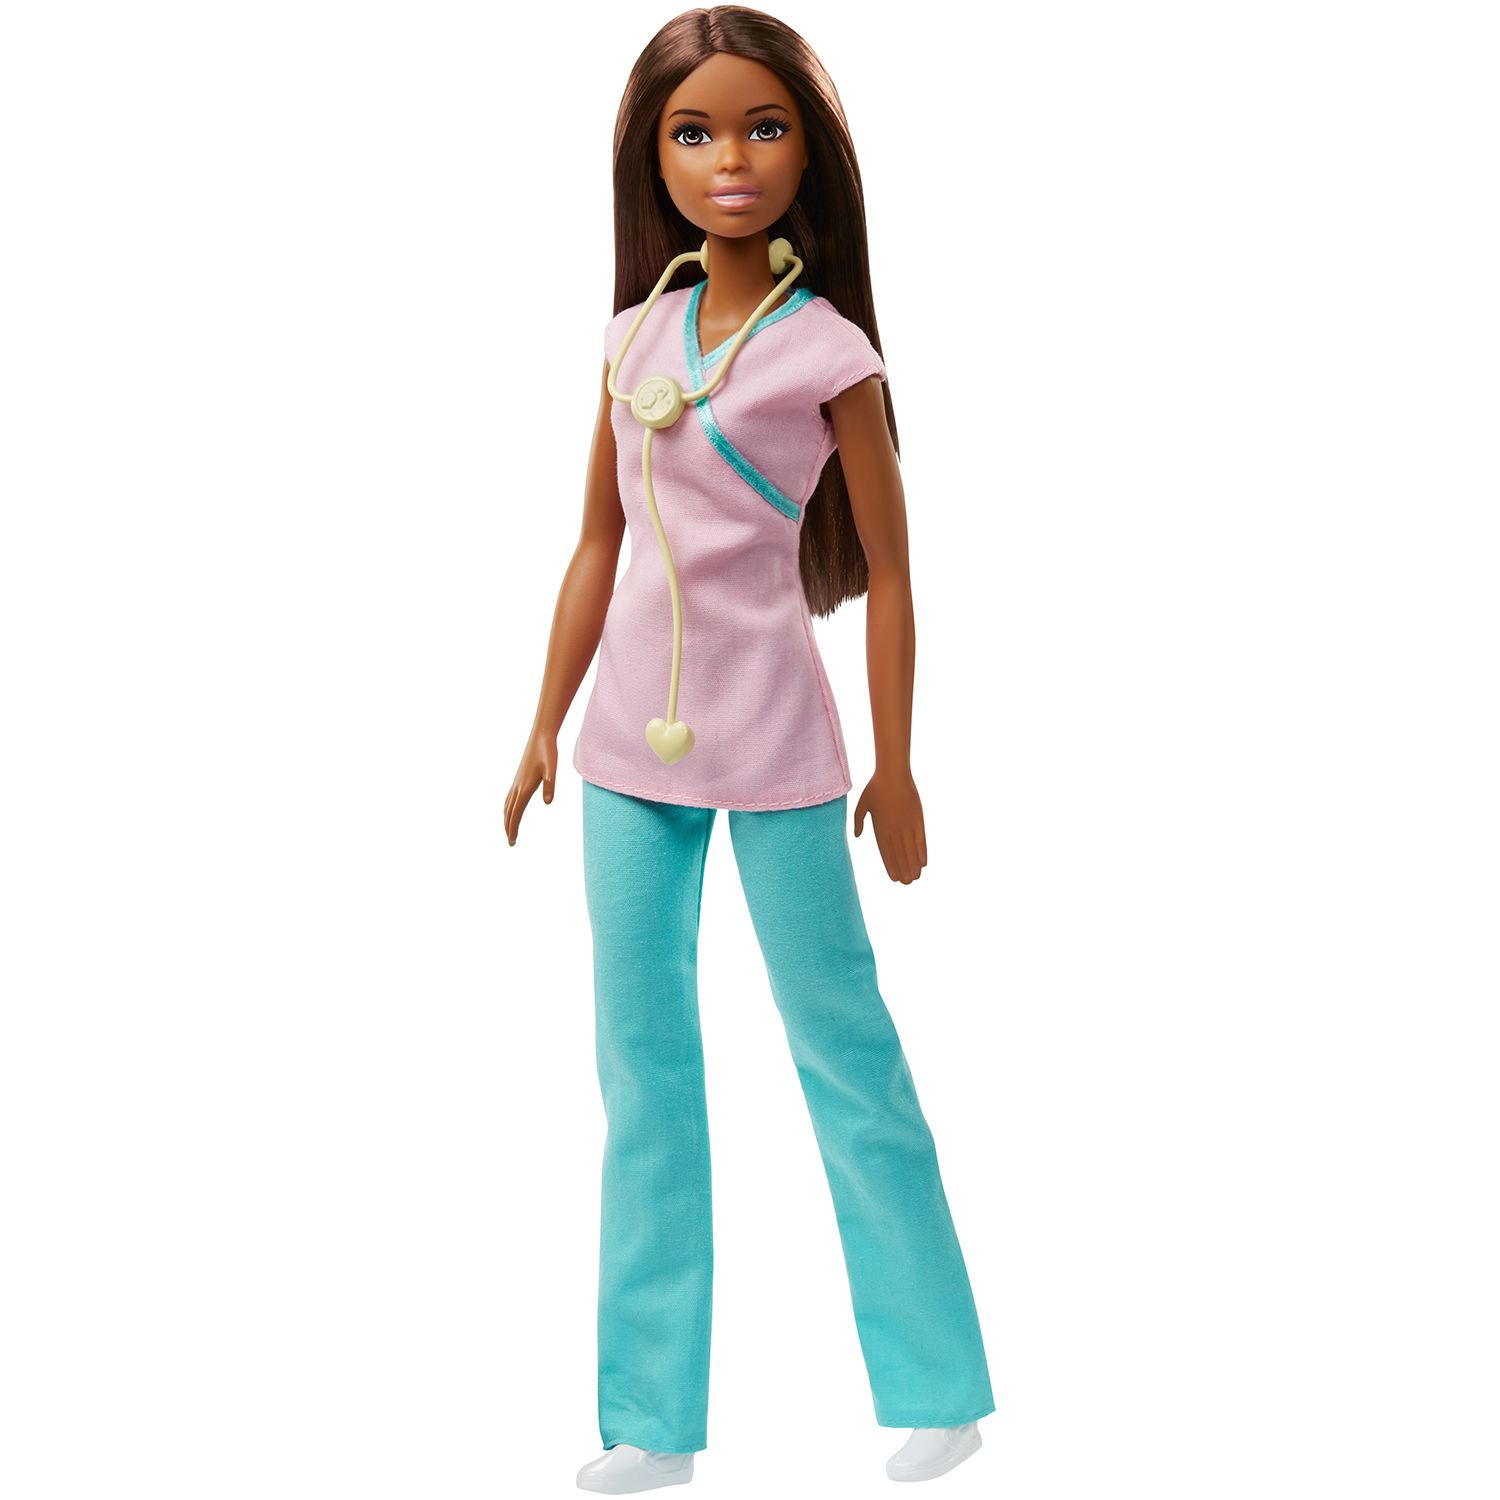 barbie career nurse doll